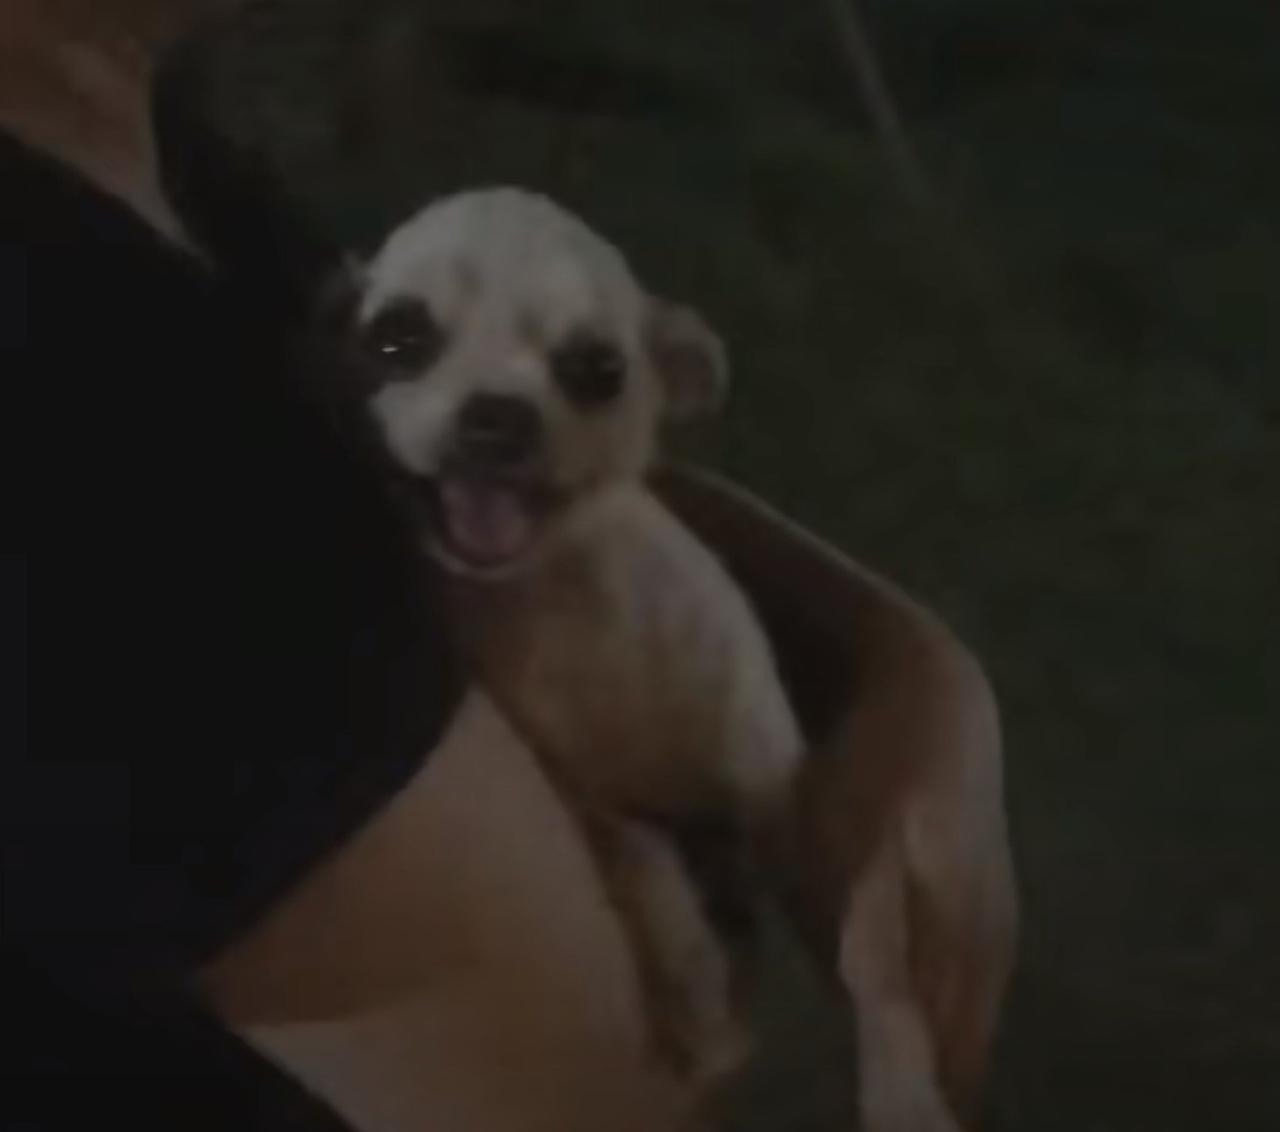 pup being held